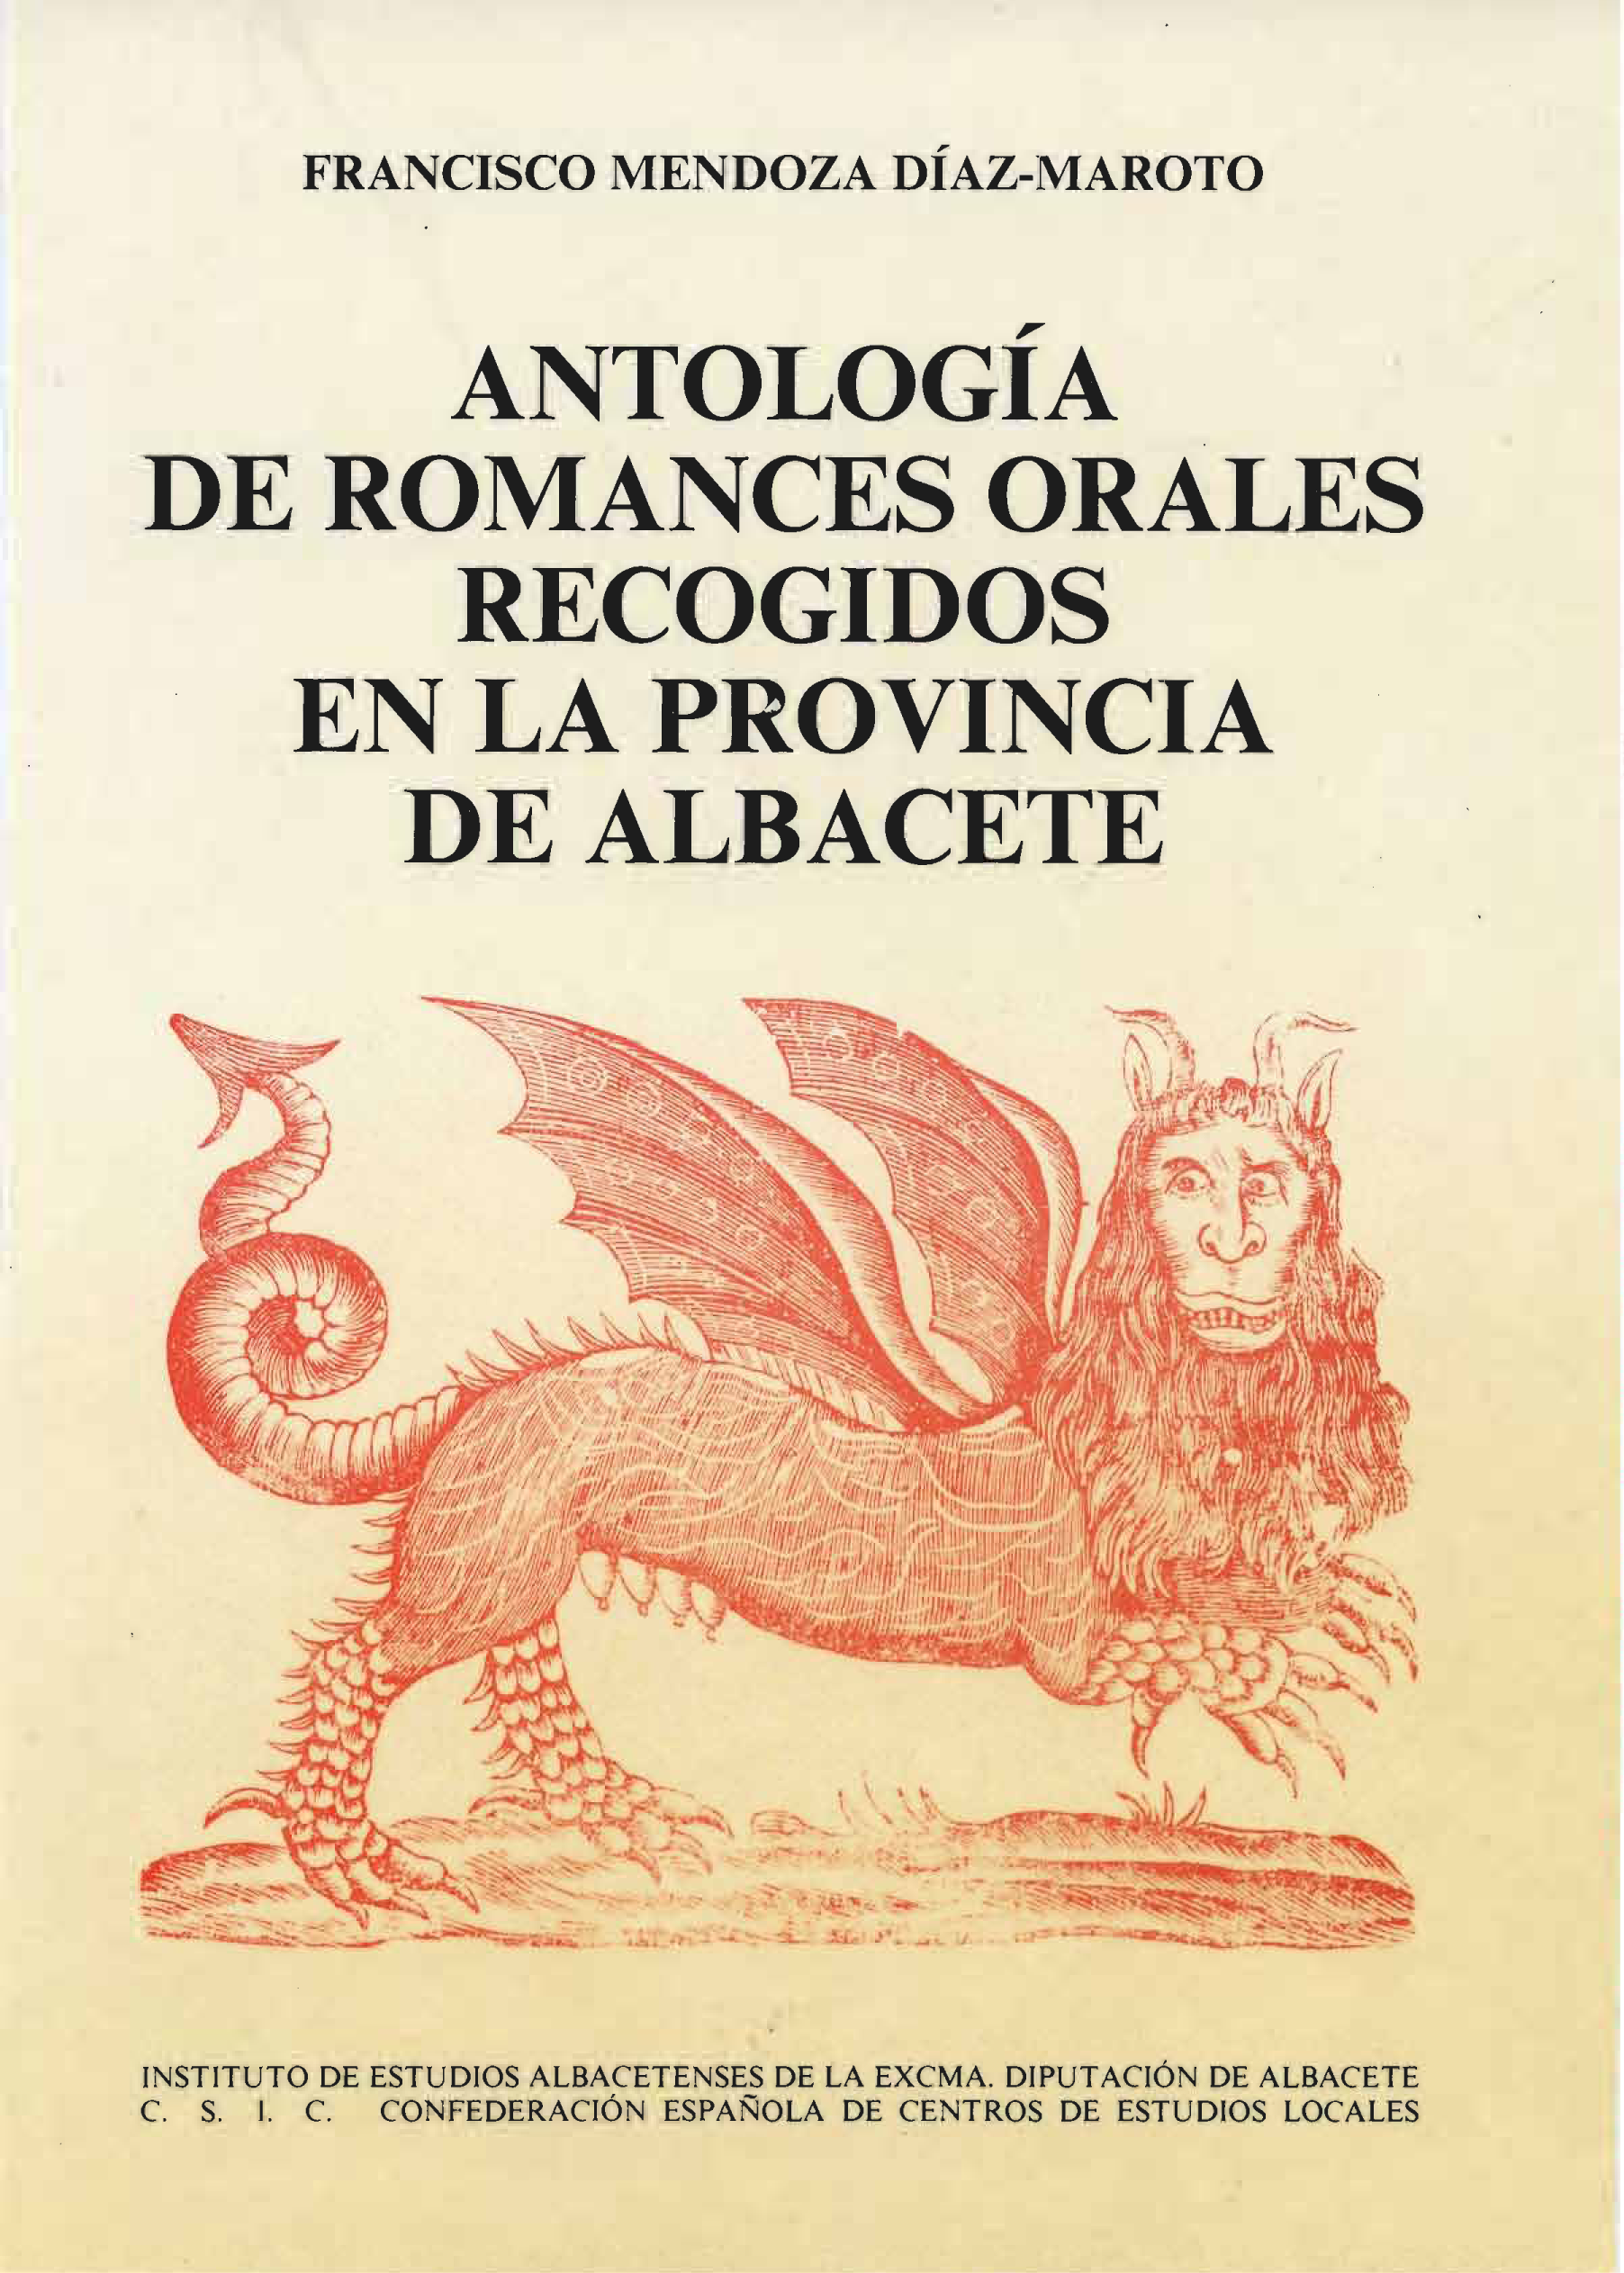 Imagen de portada del libro Antología de romances orales recogidos en la provincia de Albacete